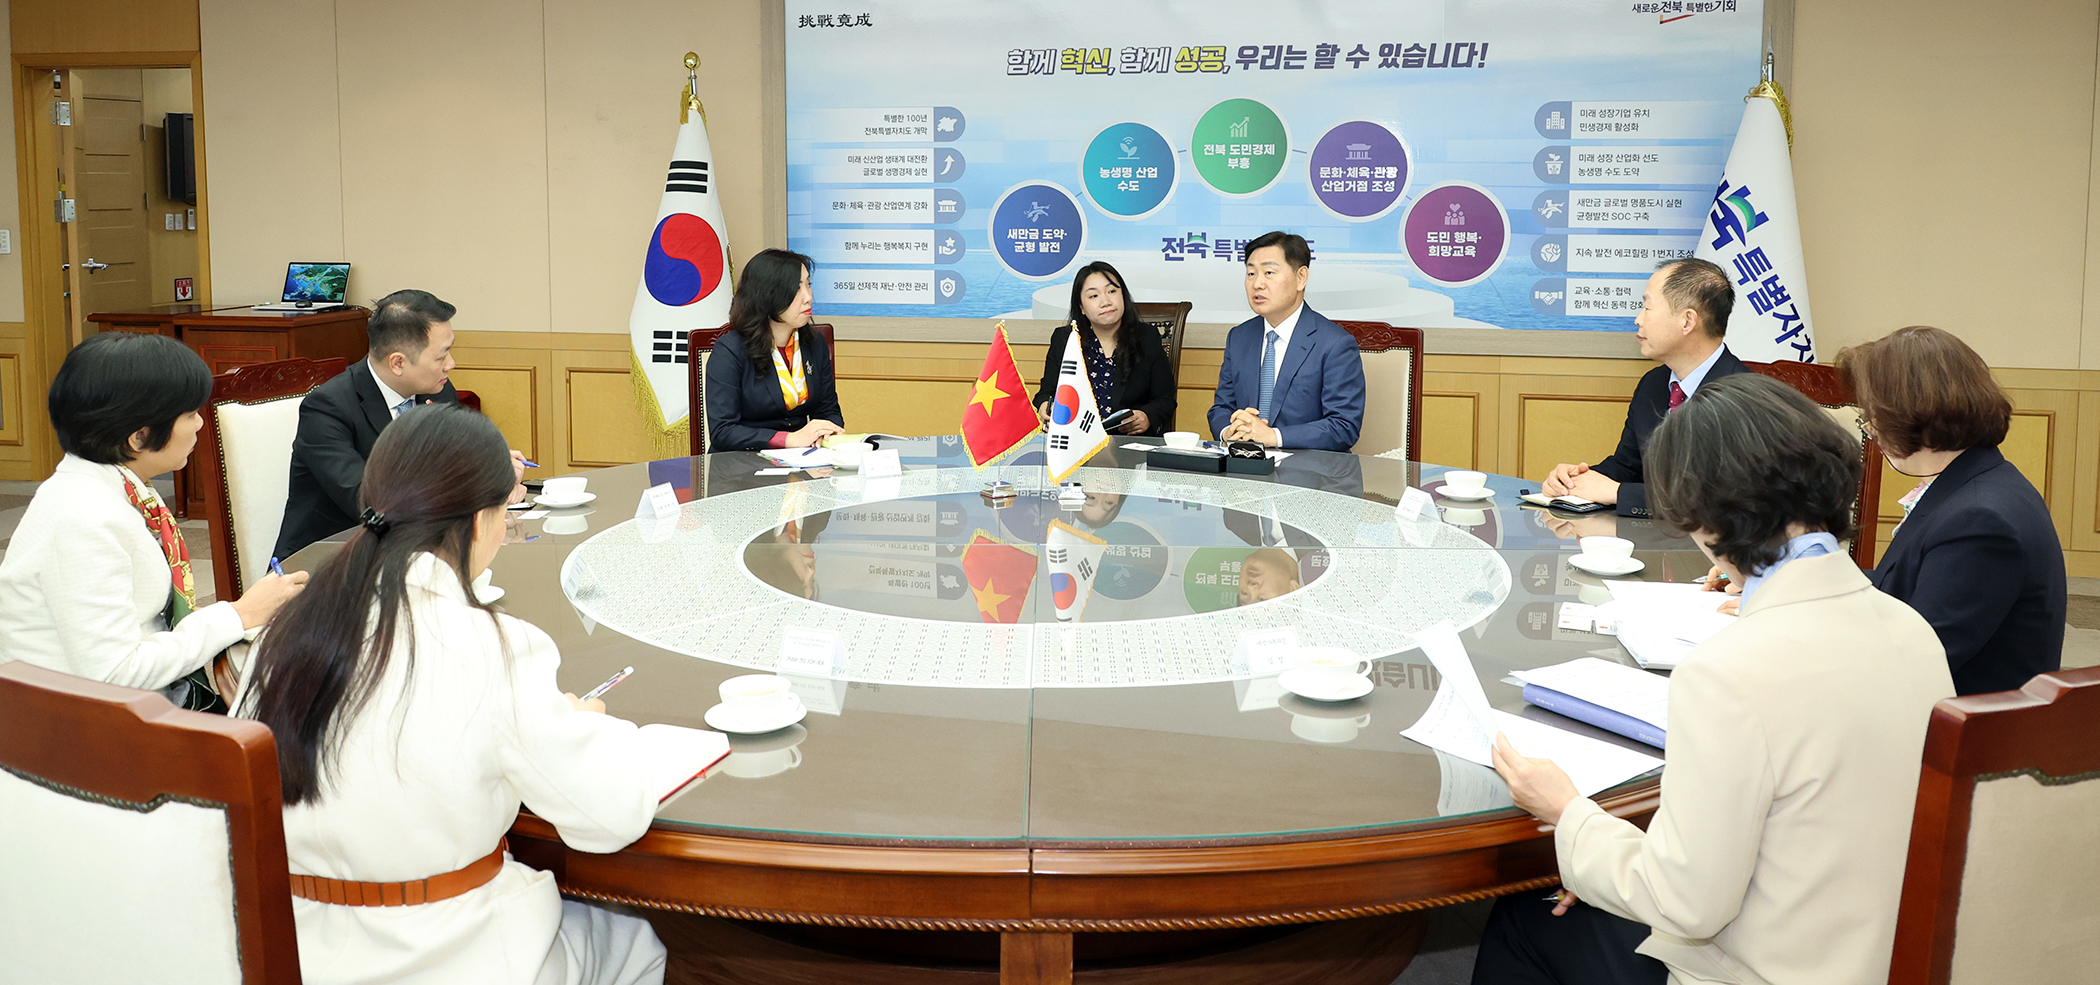 Tỉnh tự trị đặc biệt Jeonbuk, tăng cường mạng lưới hợp tác ngoại giao với Việt Nam